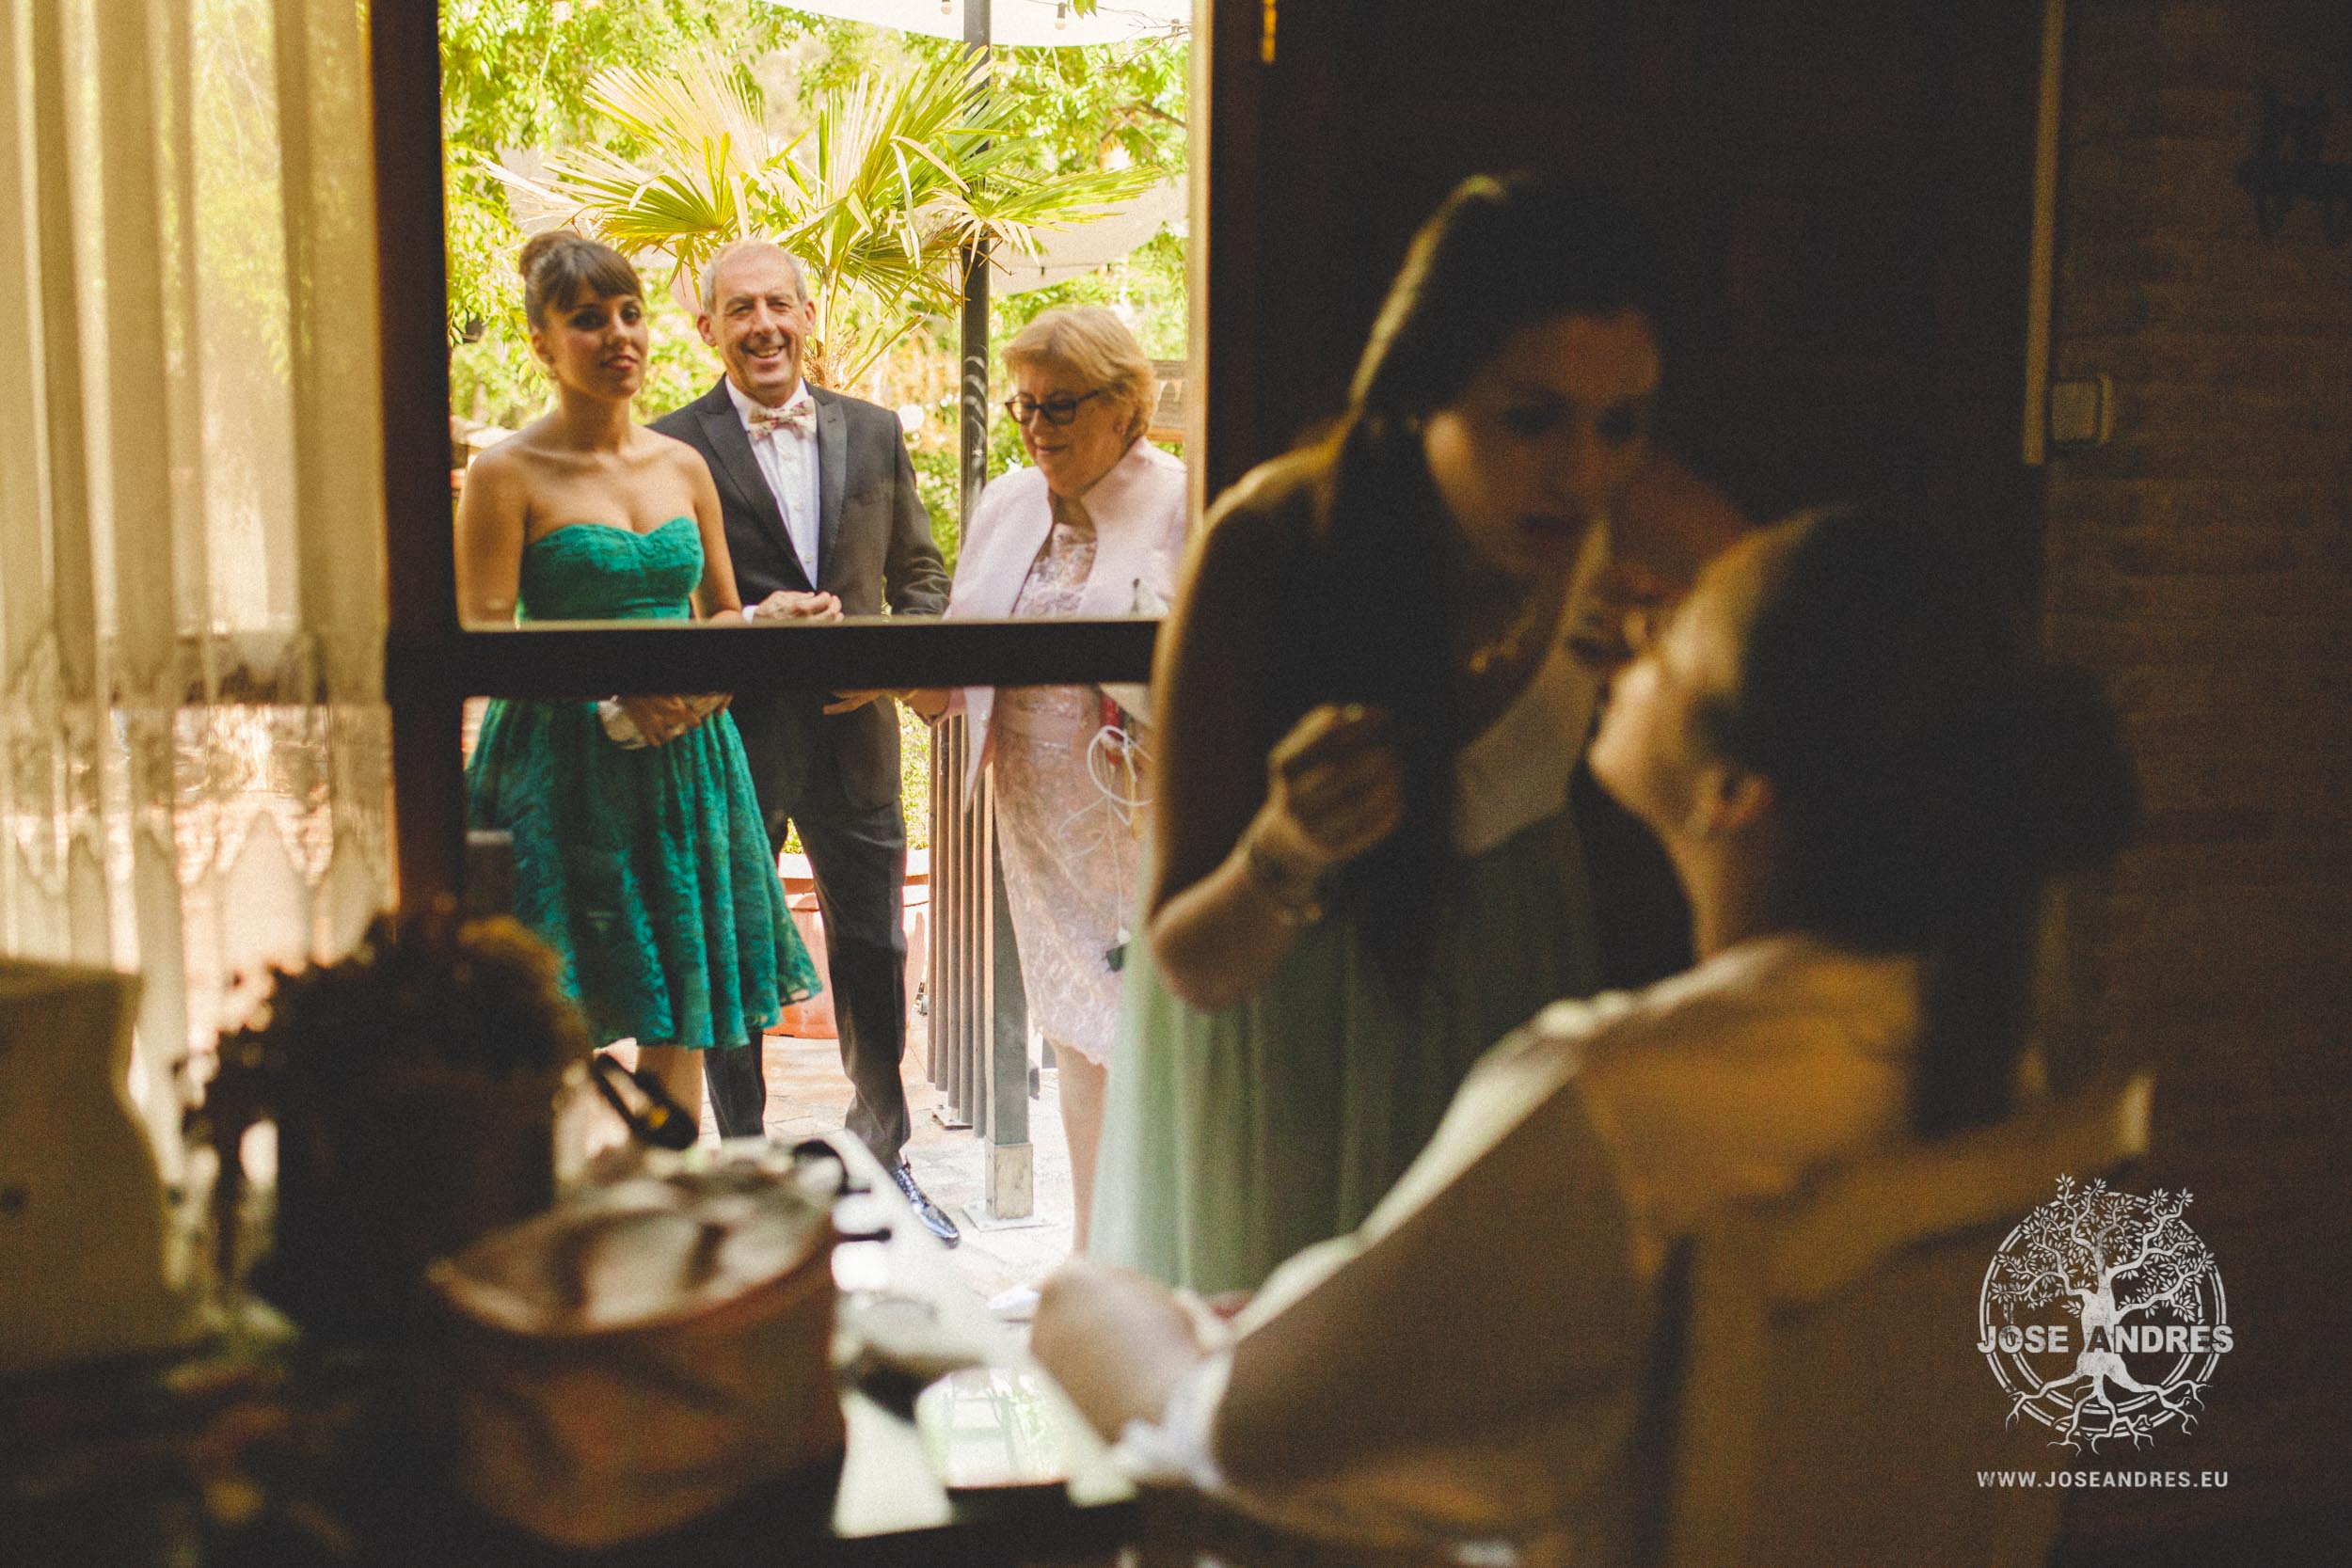 Boda de un fin de semana completo, boda en casas de Luján, Jose Andrés fotografía y cine documental de boda en Valencia, Albacete y Cuenca. Fotografía de boda natural y divertida, fotografía de boda sin posados